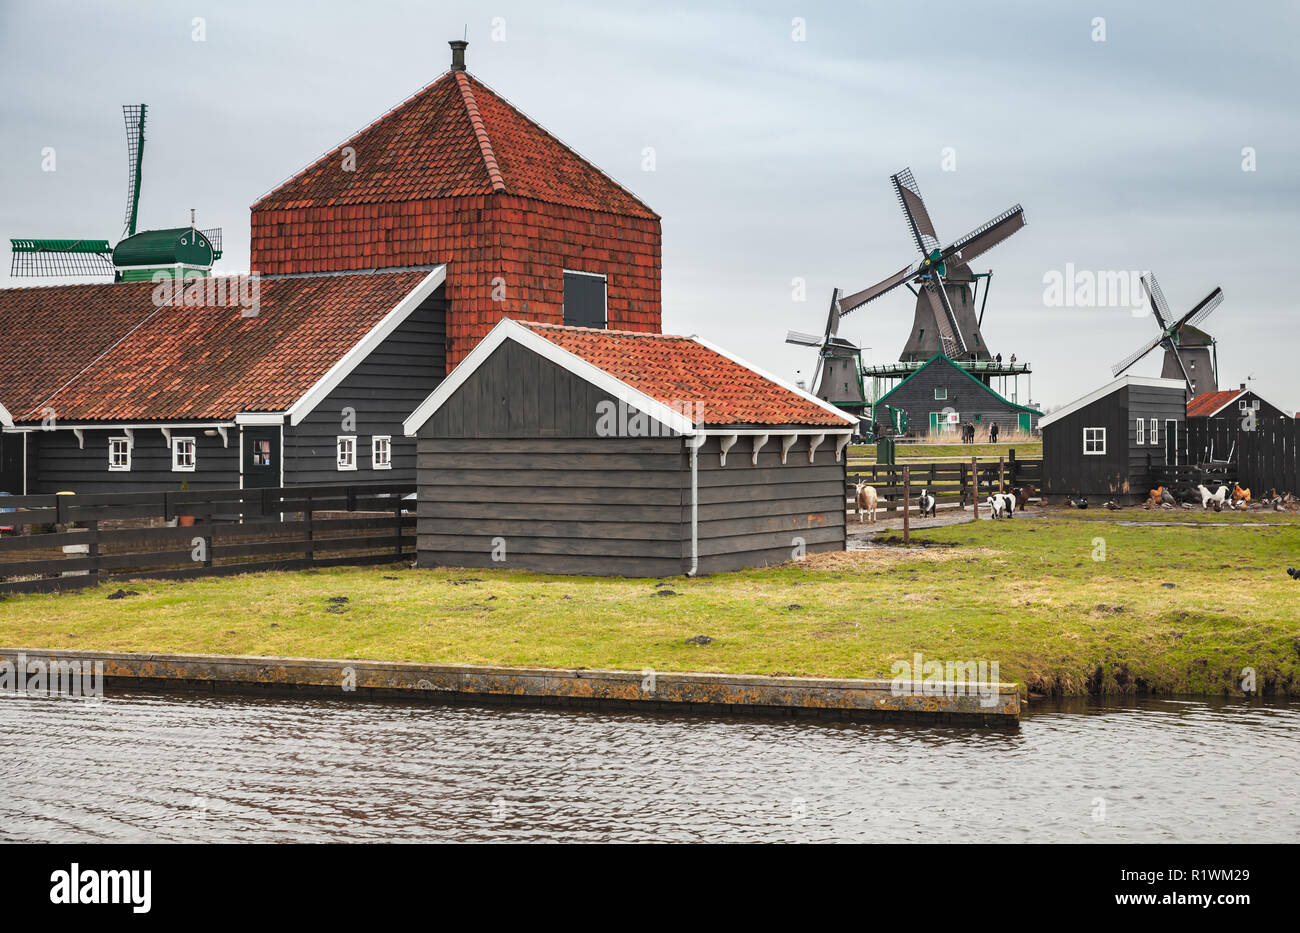 Holz-, Scheunen und Windmühlen auf Fluss Zaan Küste, Zaanse Schans Stadt, beliebten touristischen Attraktionen der Niederlande. Vorort von Amsterdam Stockfoto